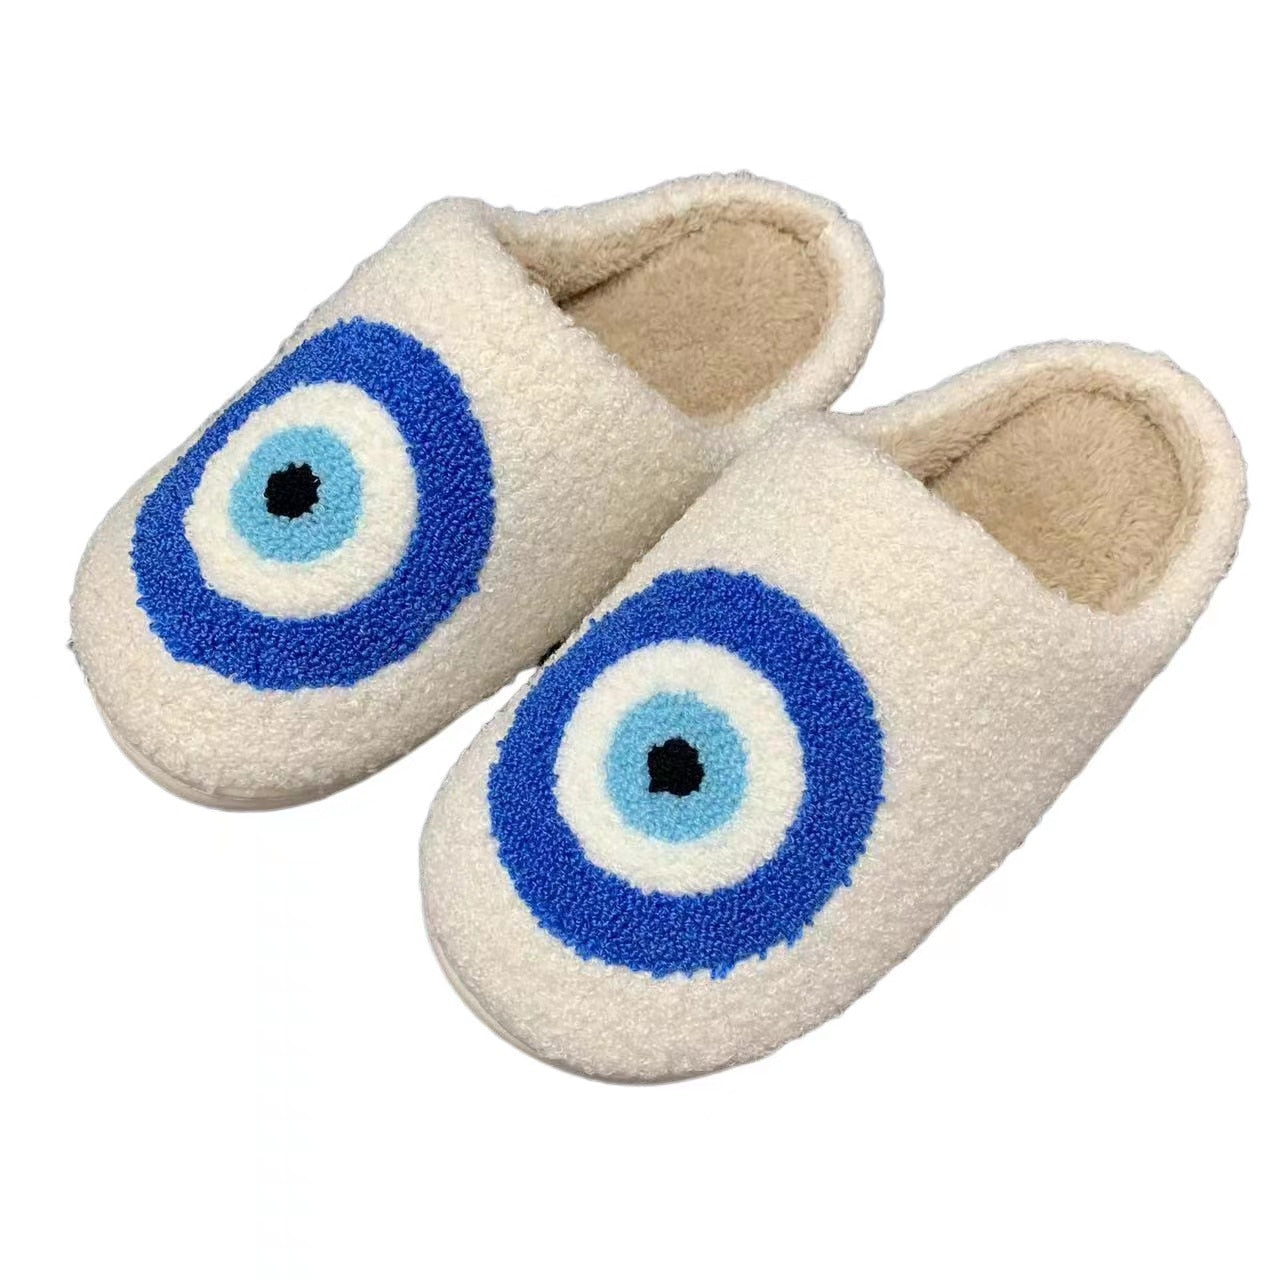 Cozy Feet Delight Slippers Blue Cartoon Eye